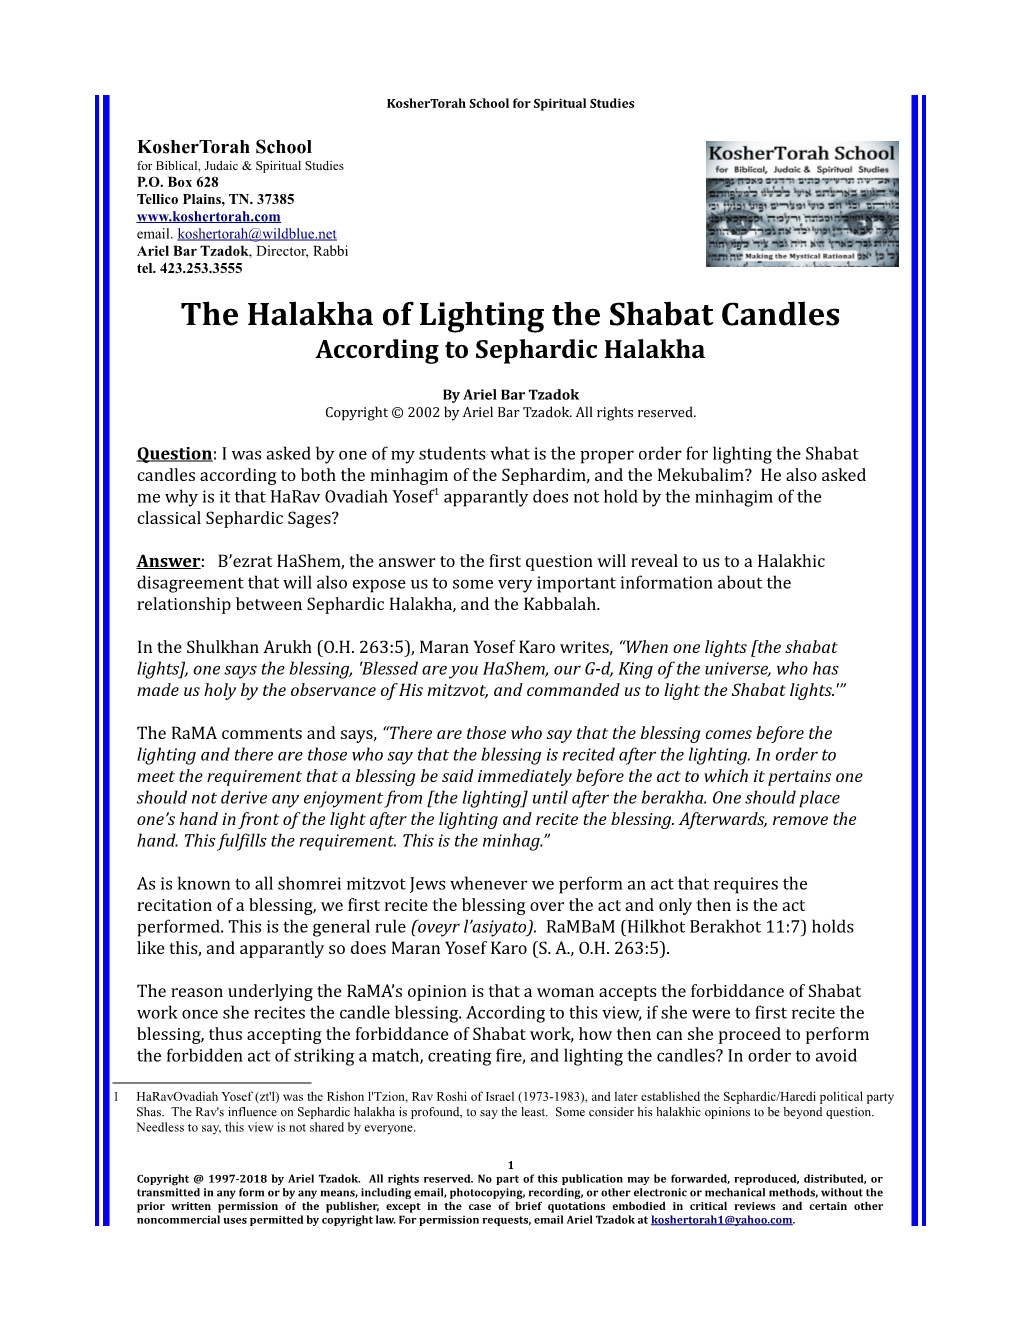 The Halakha of Lighting the Shabat Candles According to Sephardic Halakha